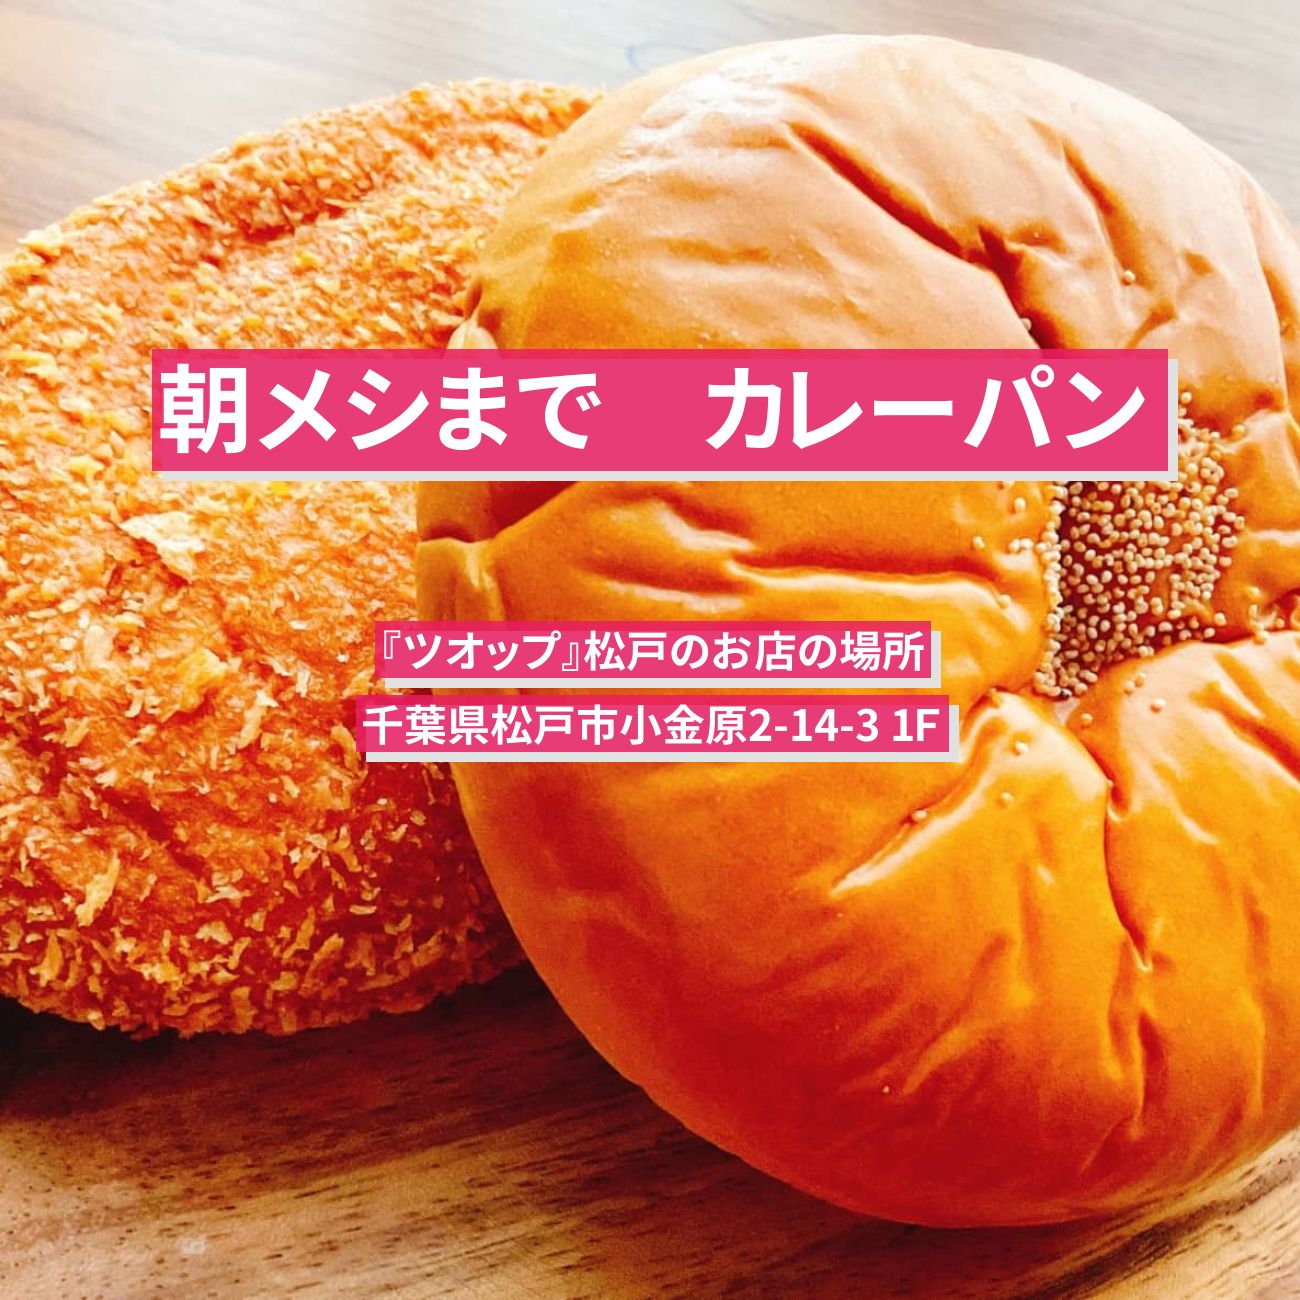 【朝メシまで】カレーパン『ツオップ』松戸で300種が並ぶパン屋さんのお店